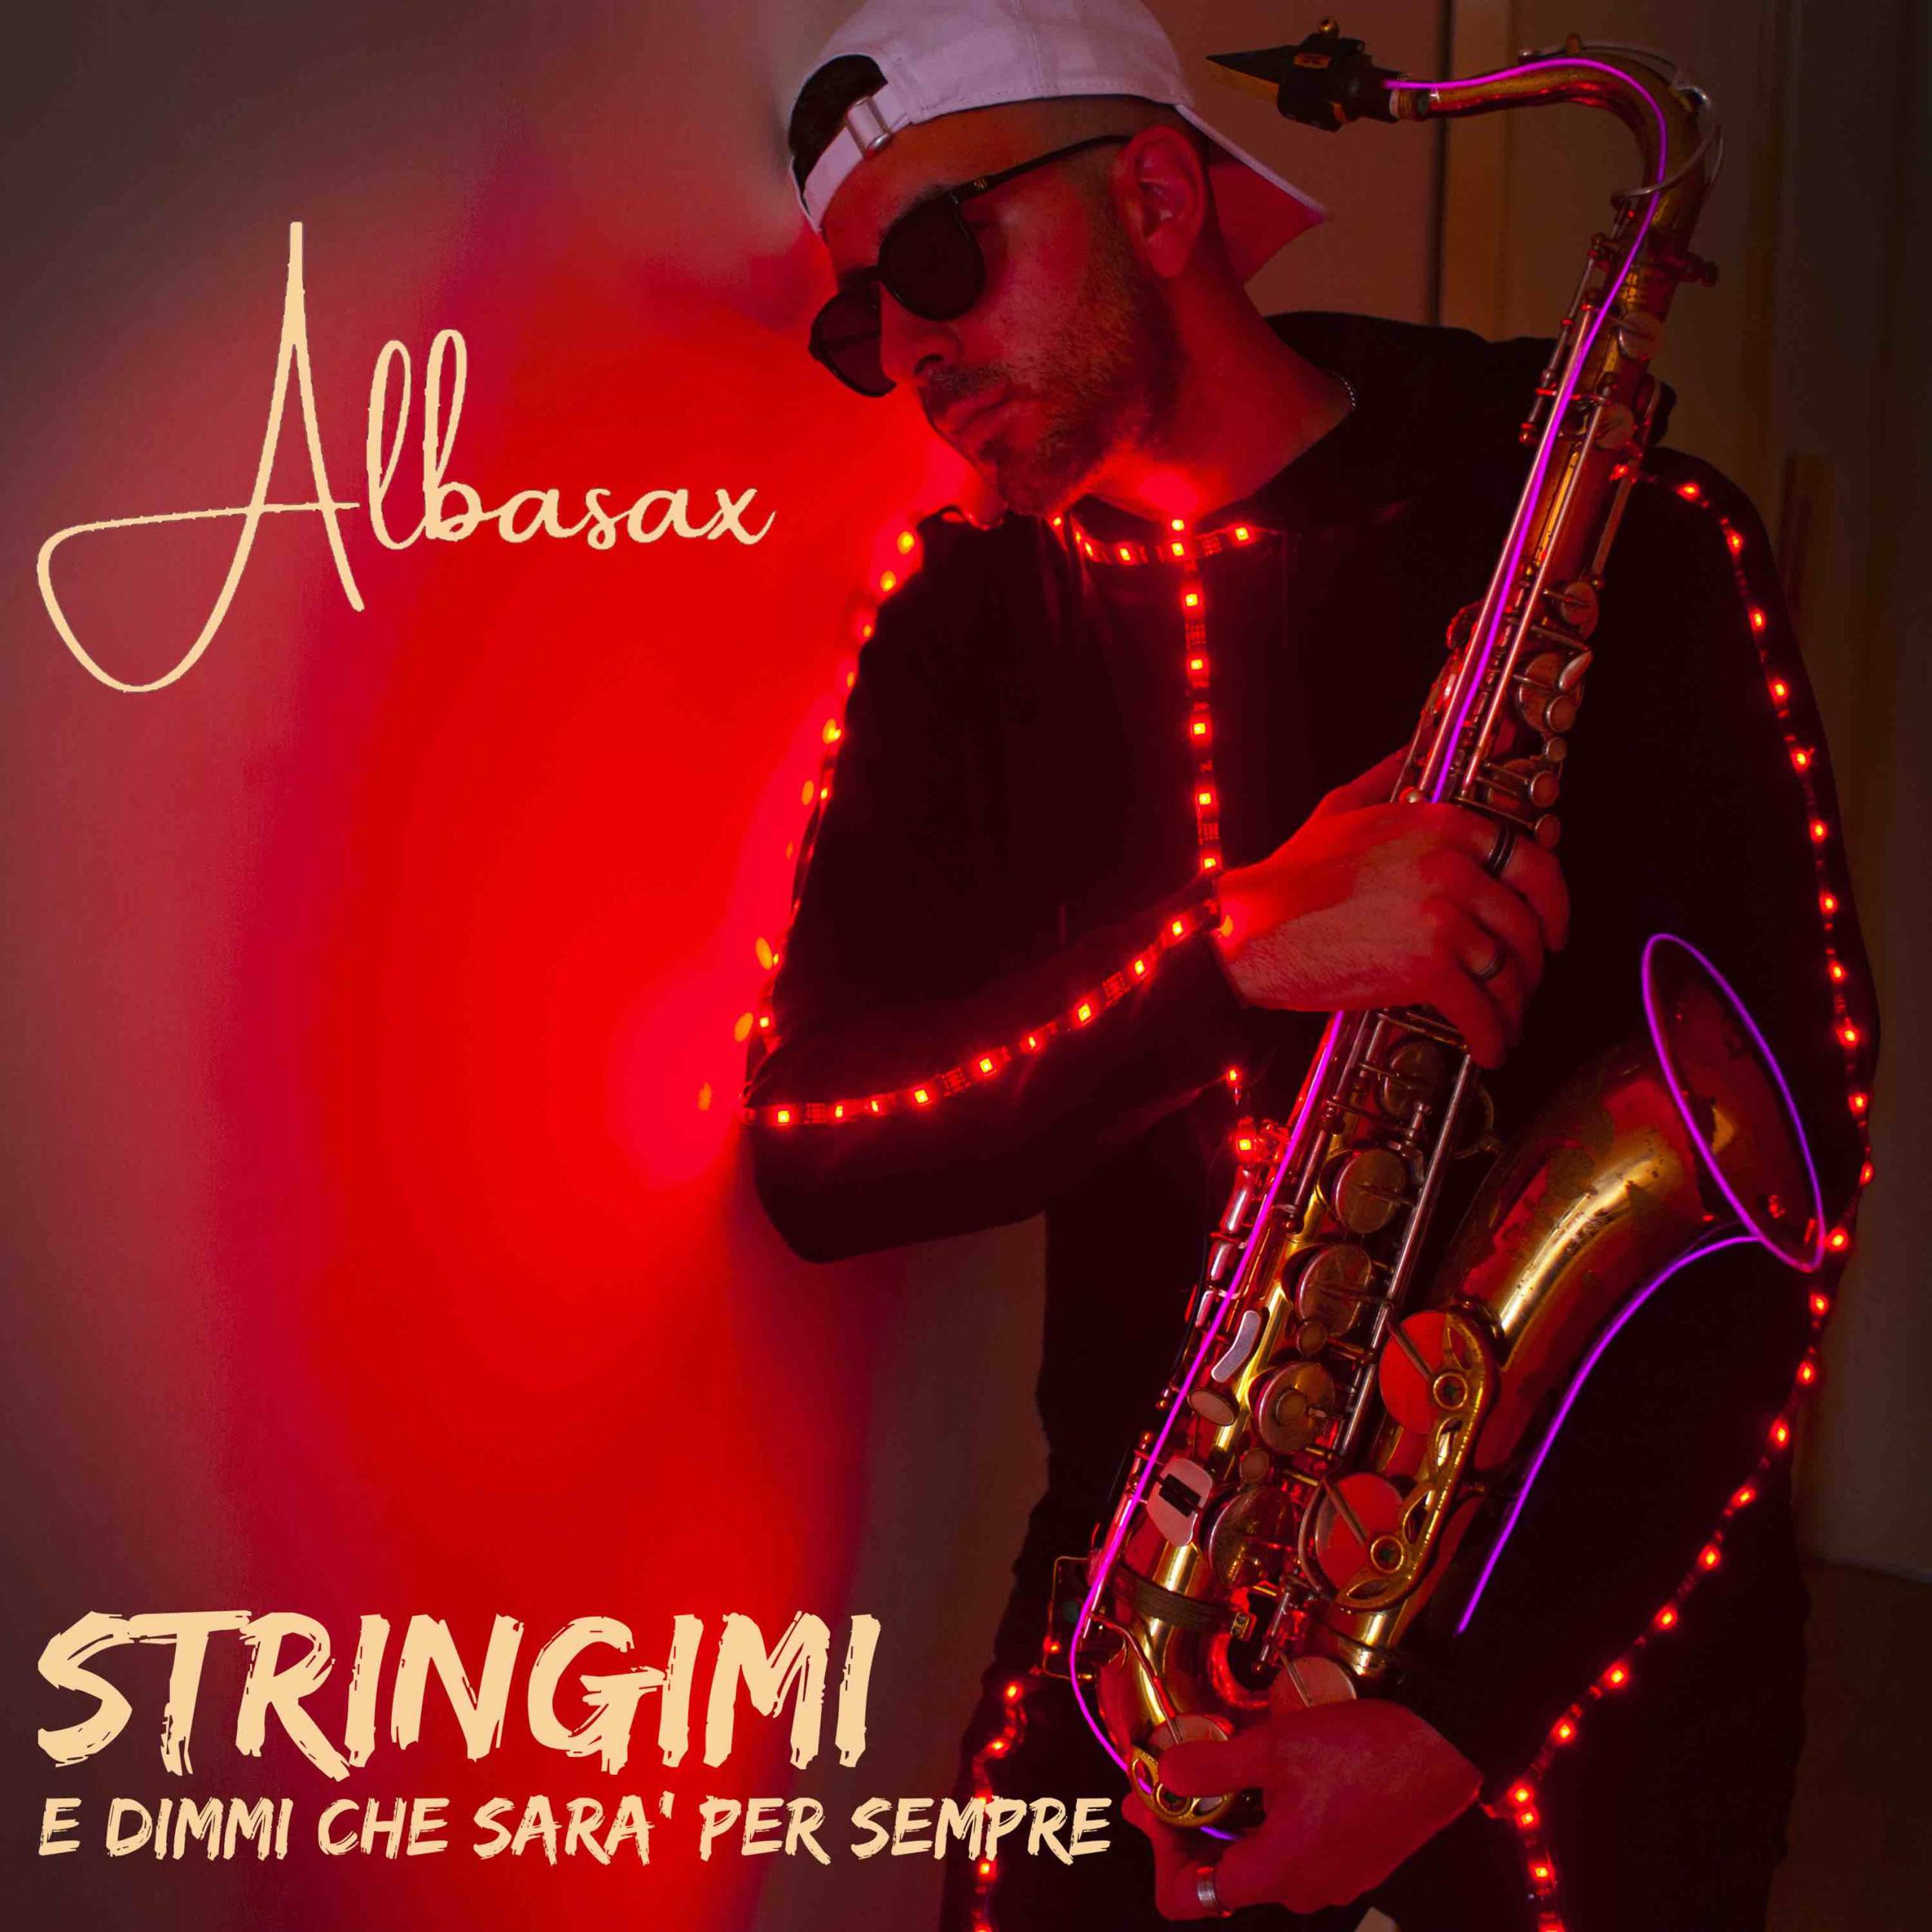 ‘Stringimi e dimmi che sarà per sempre’, il nuovo singolo di Albasax scritto con Davide Rossi, figlio di Vasco